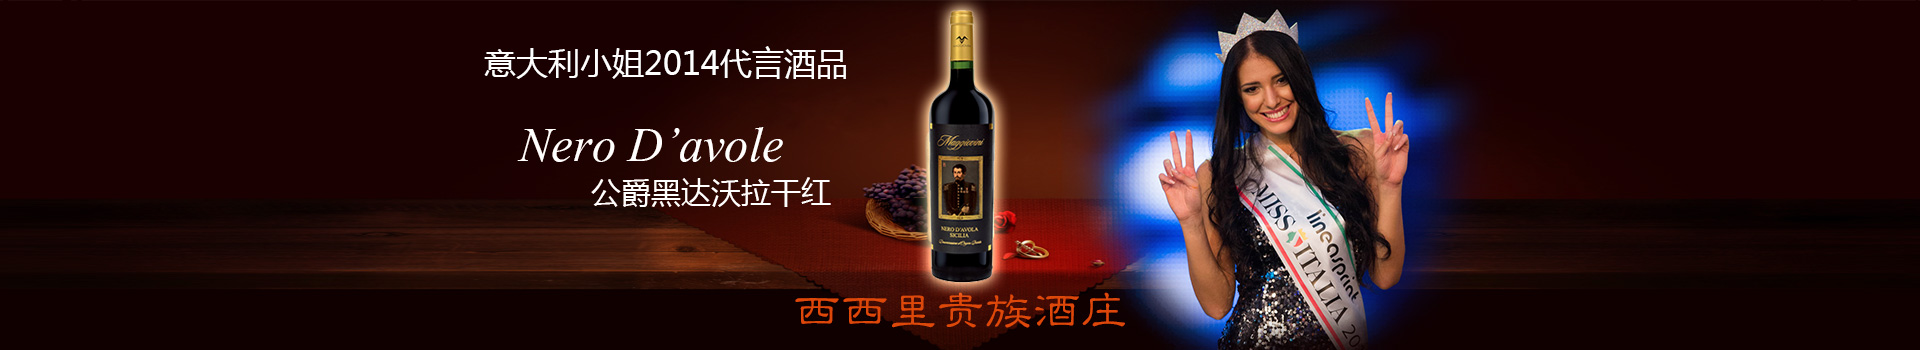 意大利小姐2014代言公爵黑达沃拉干红由亚平宁酒业唯一代理进入中国市场